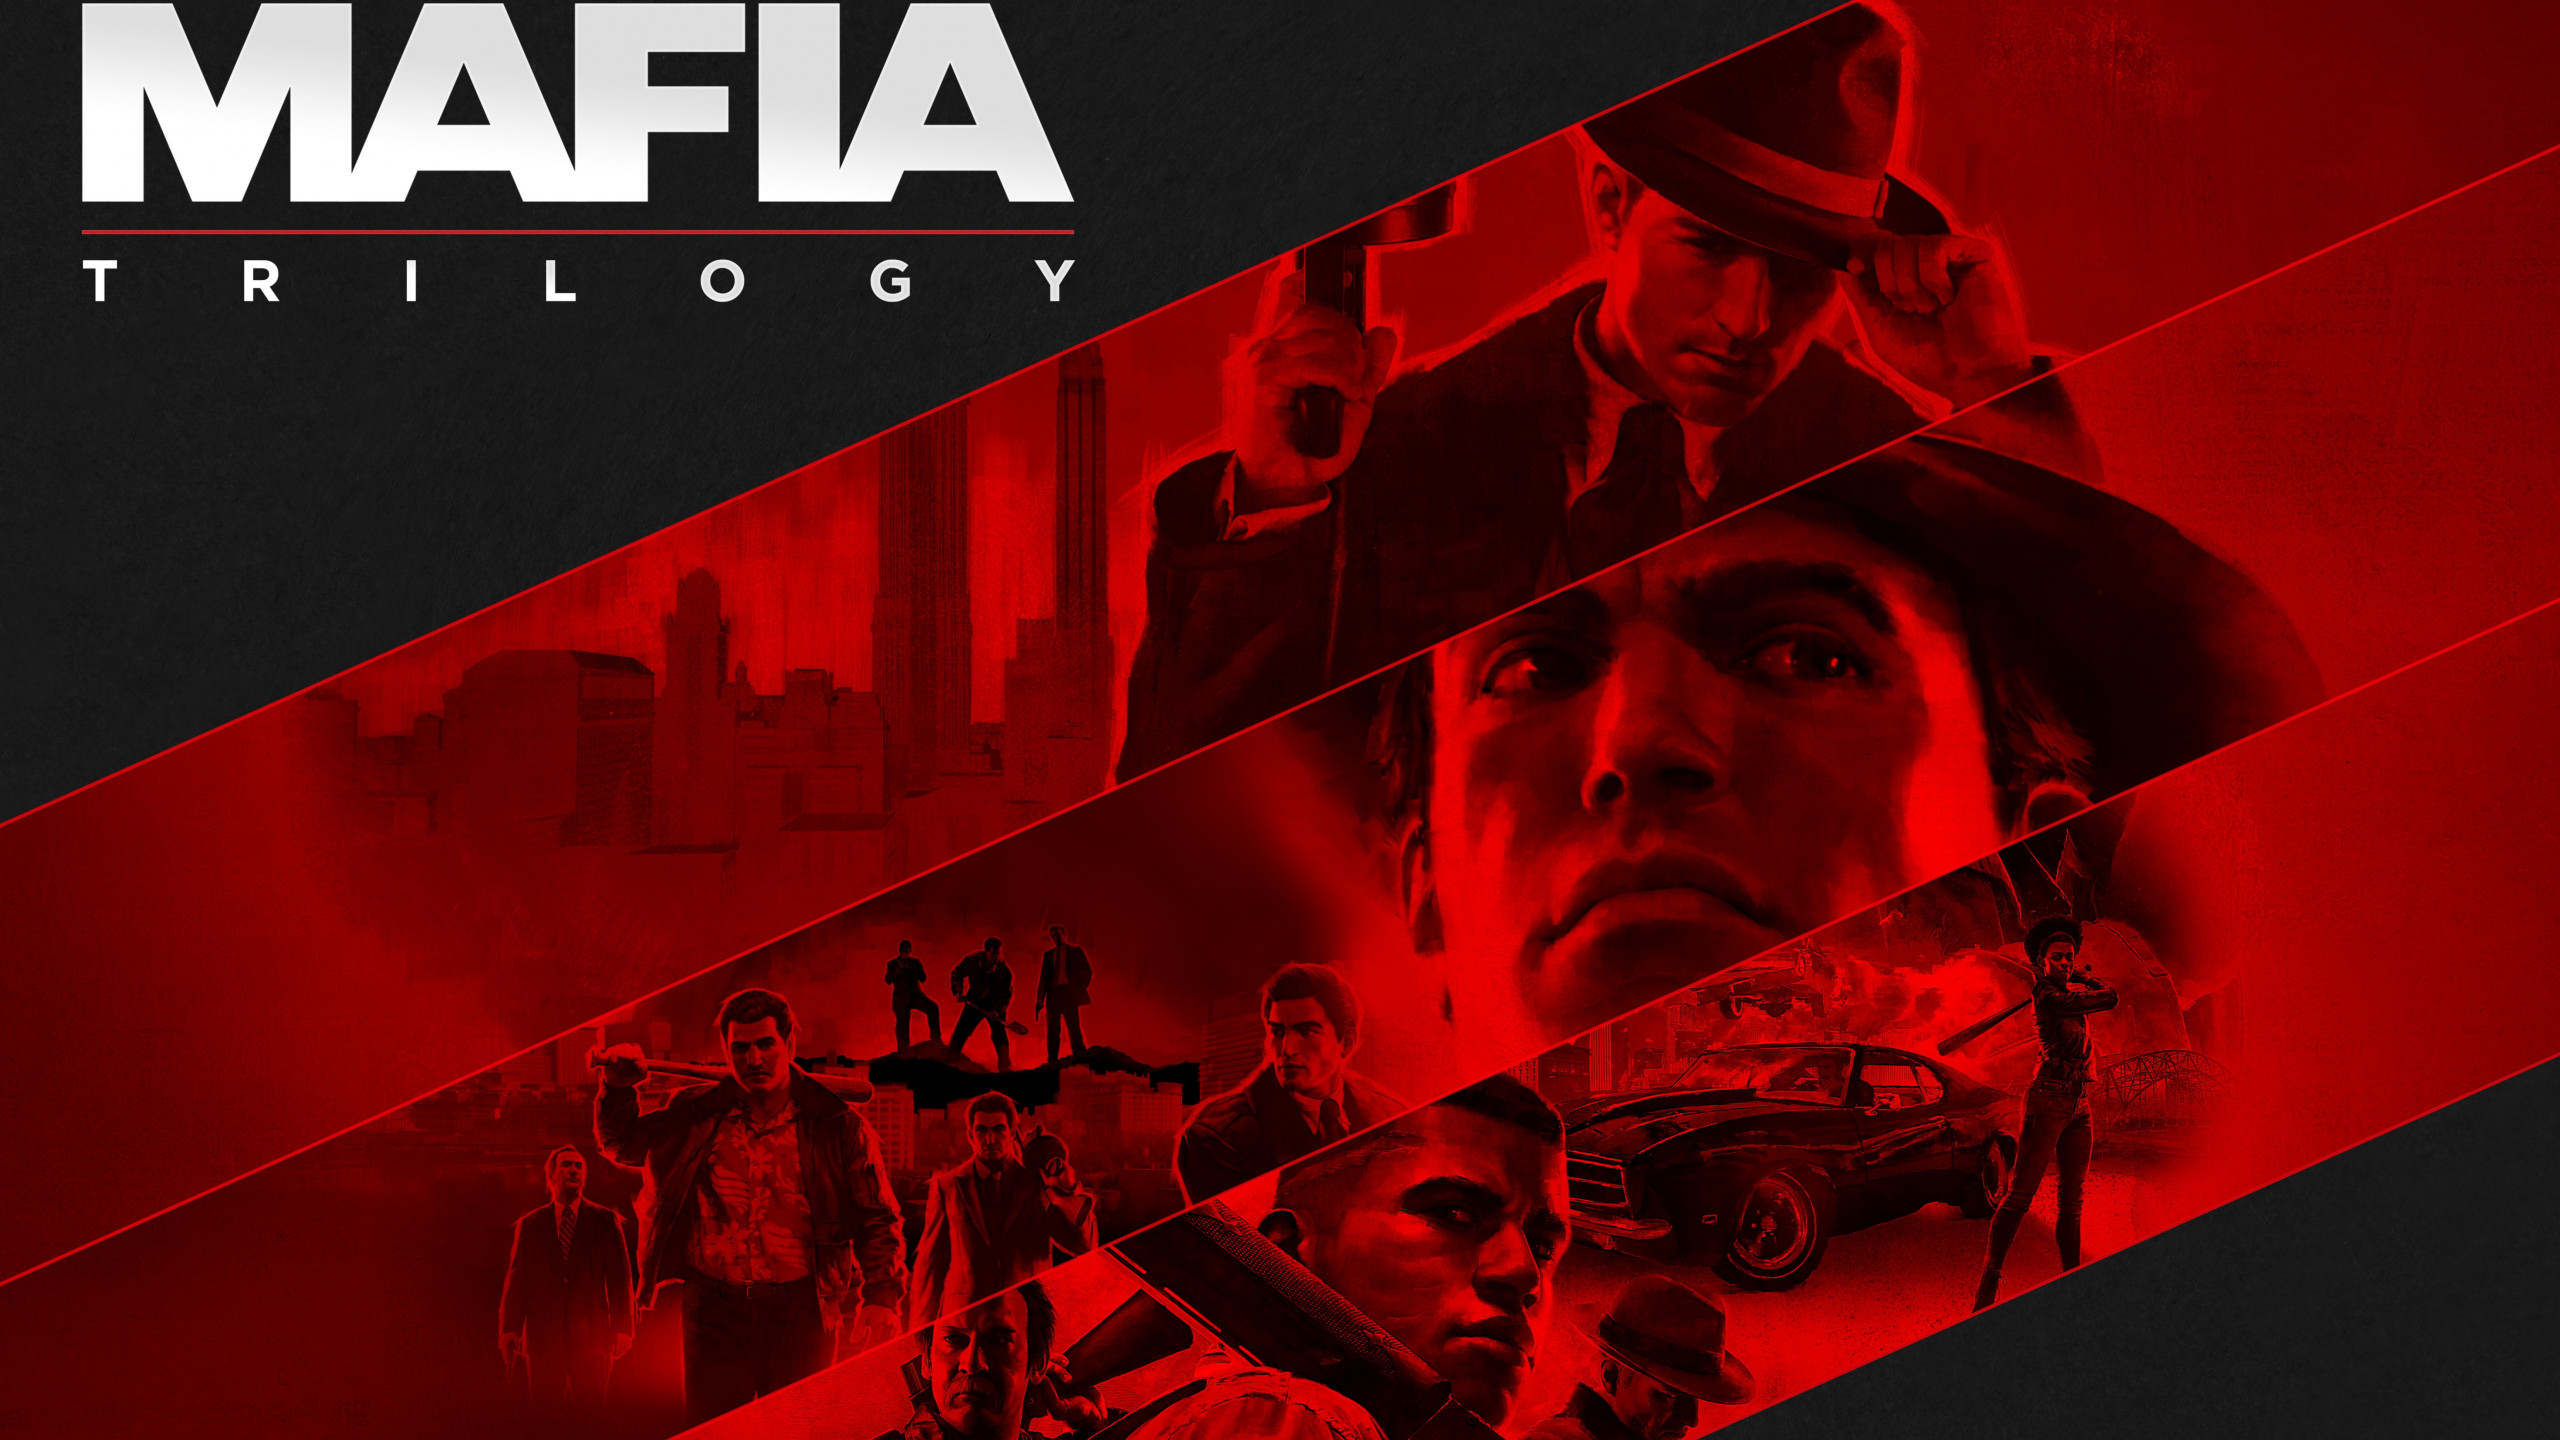 Mafia Trilogy wallpaper 2560x1440